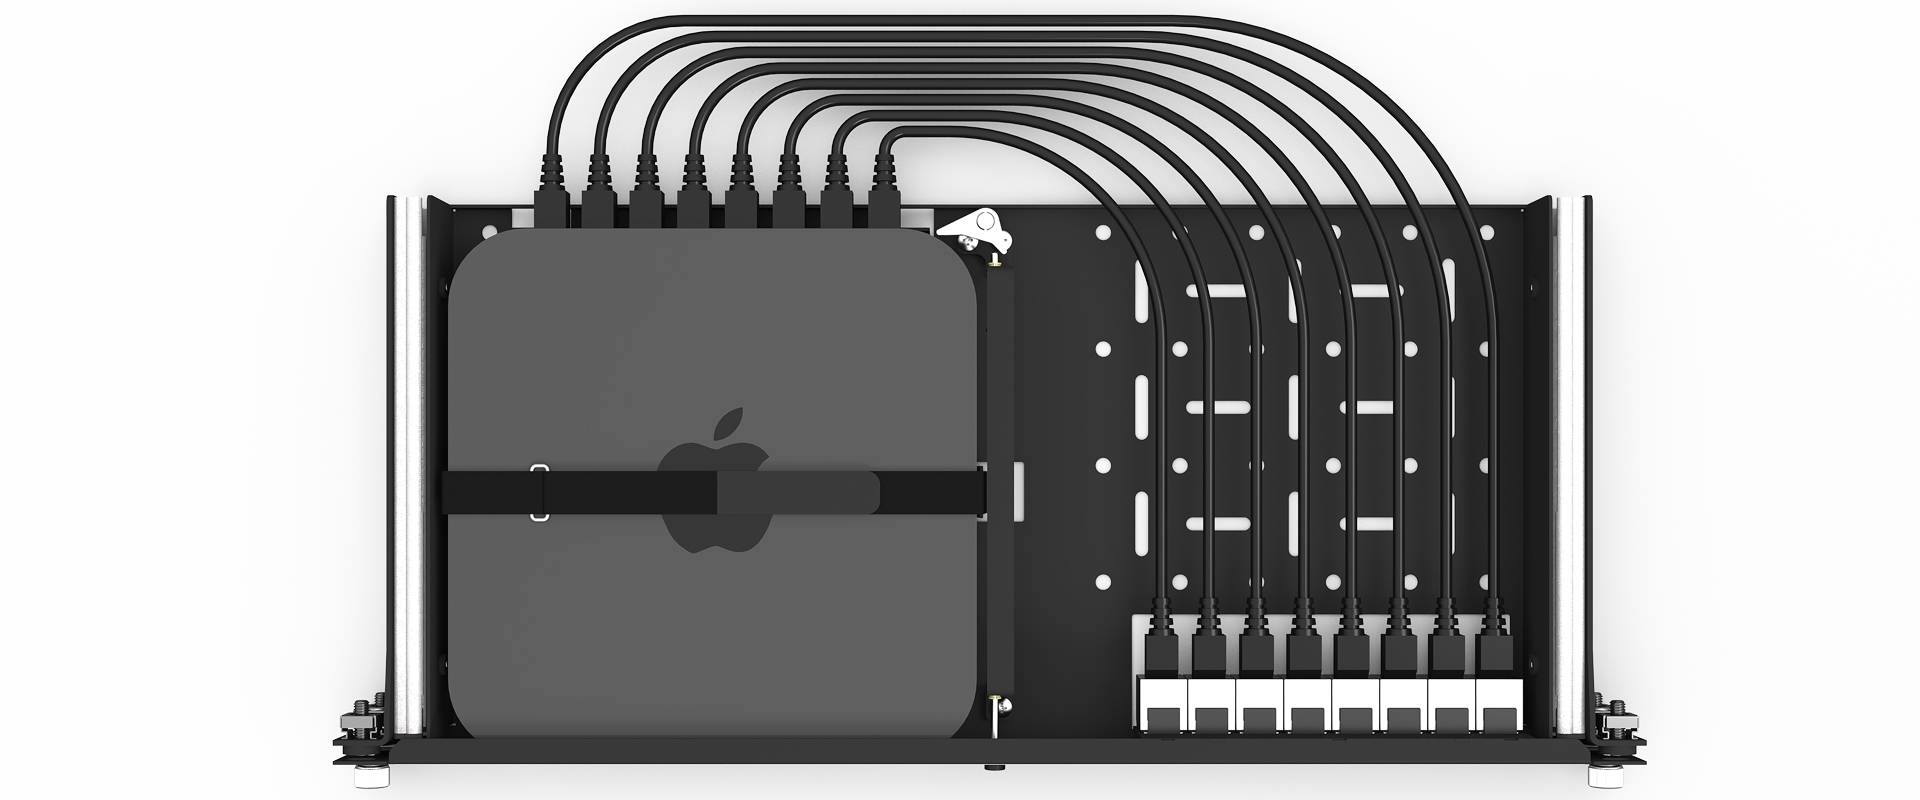 Mac Mini rack mount kit